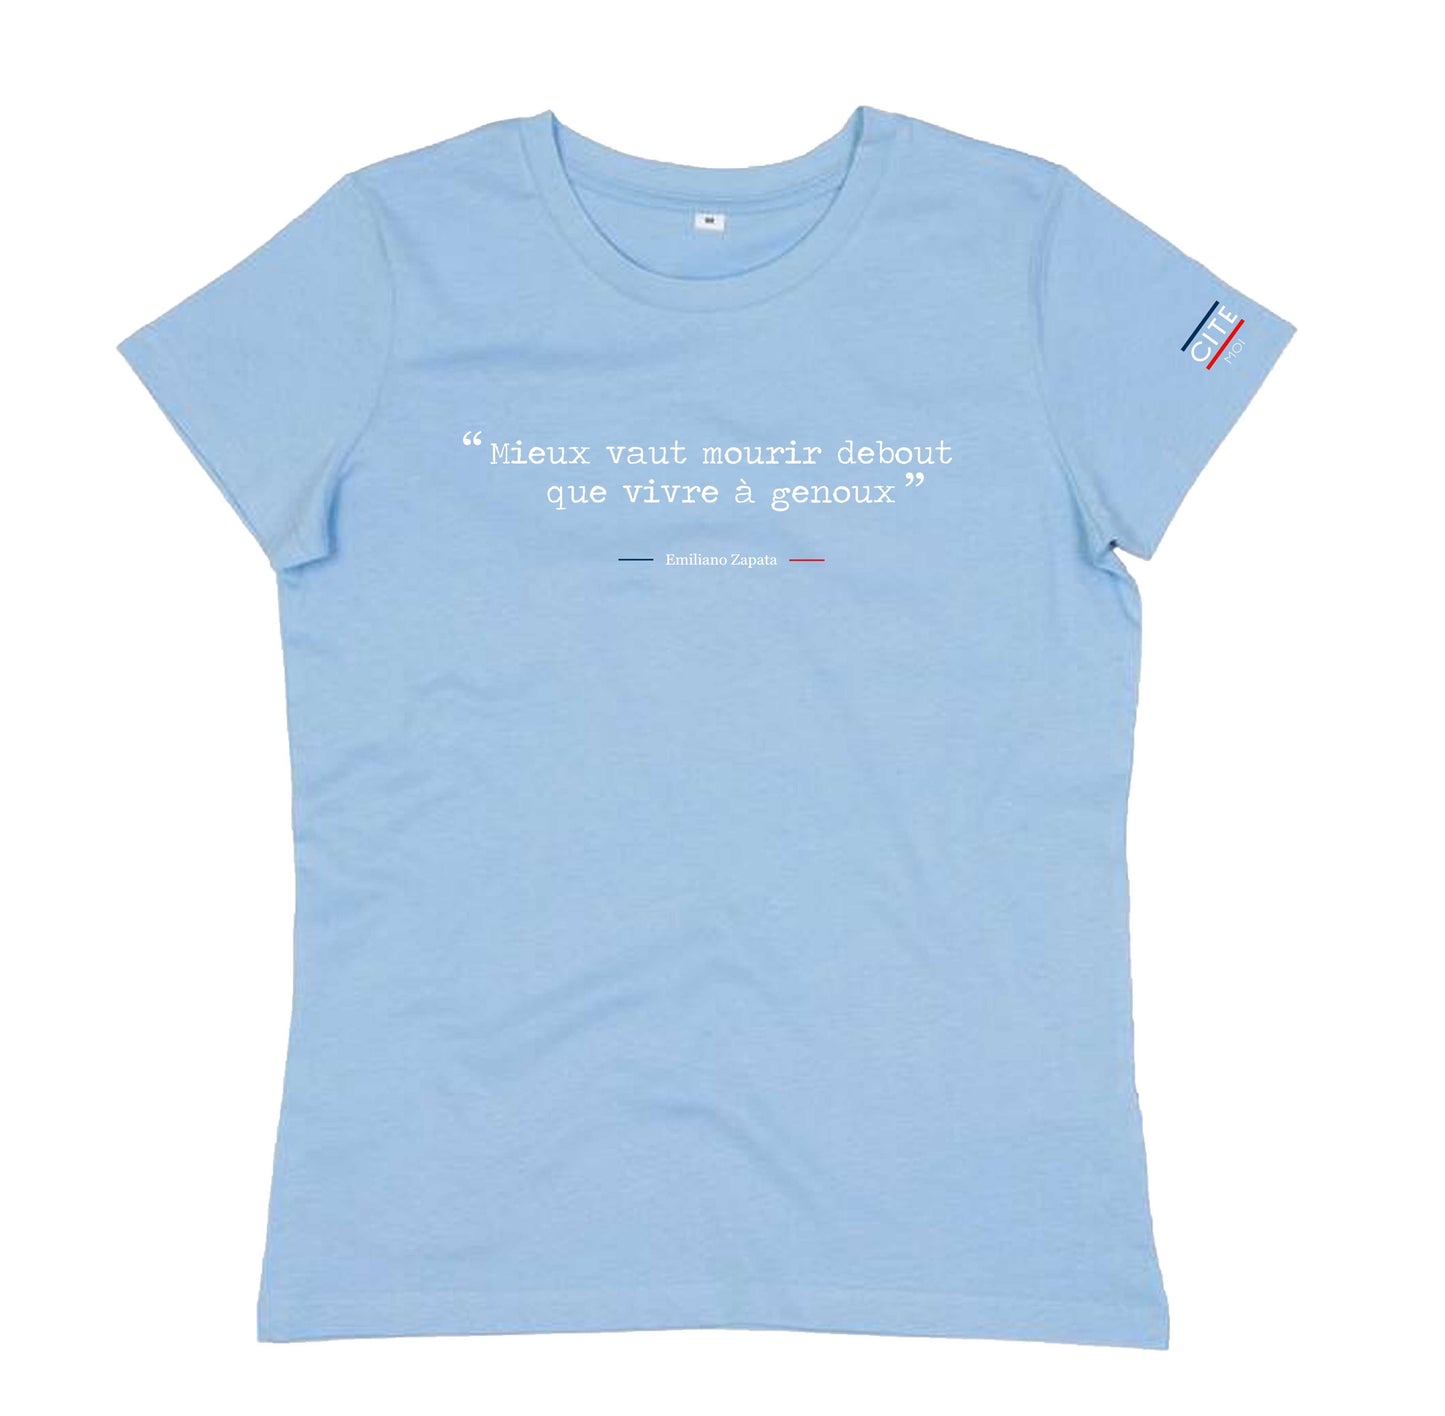 T-shirt femme -  Mieux vaut mourir debout que vivre à genoux - Emiliano Zapata